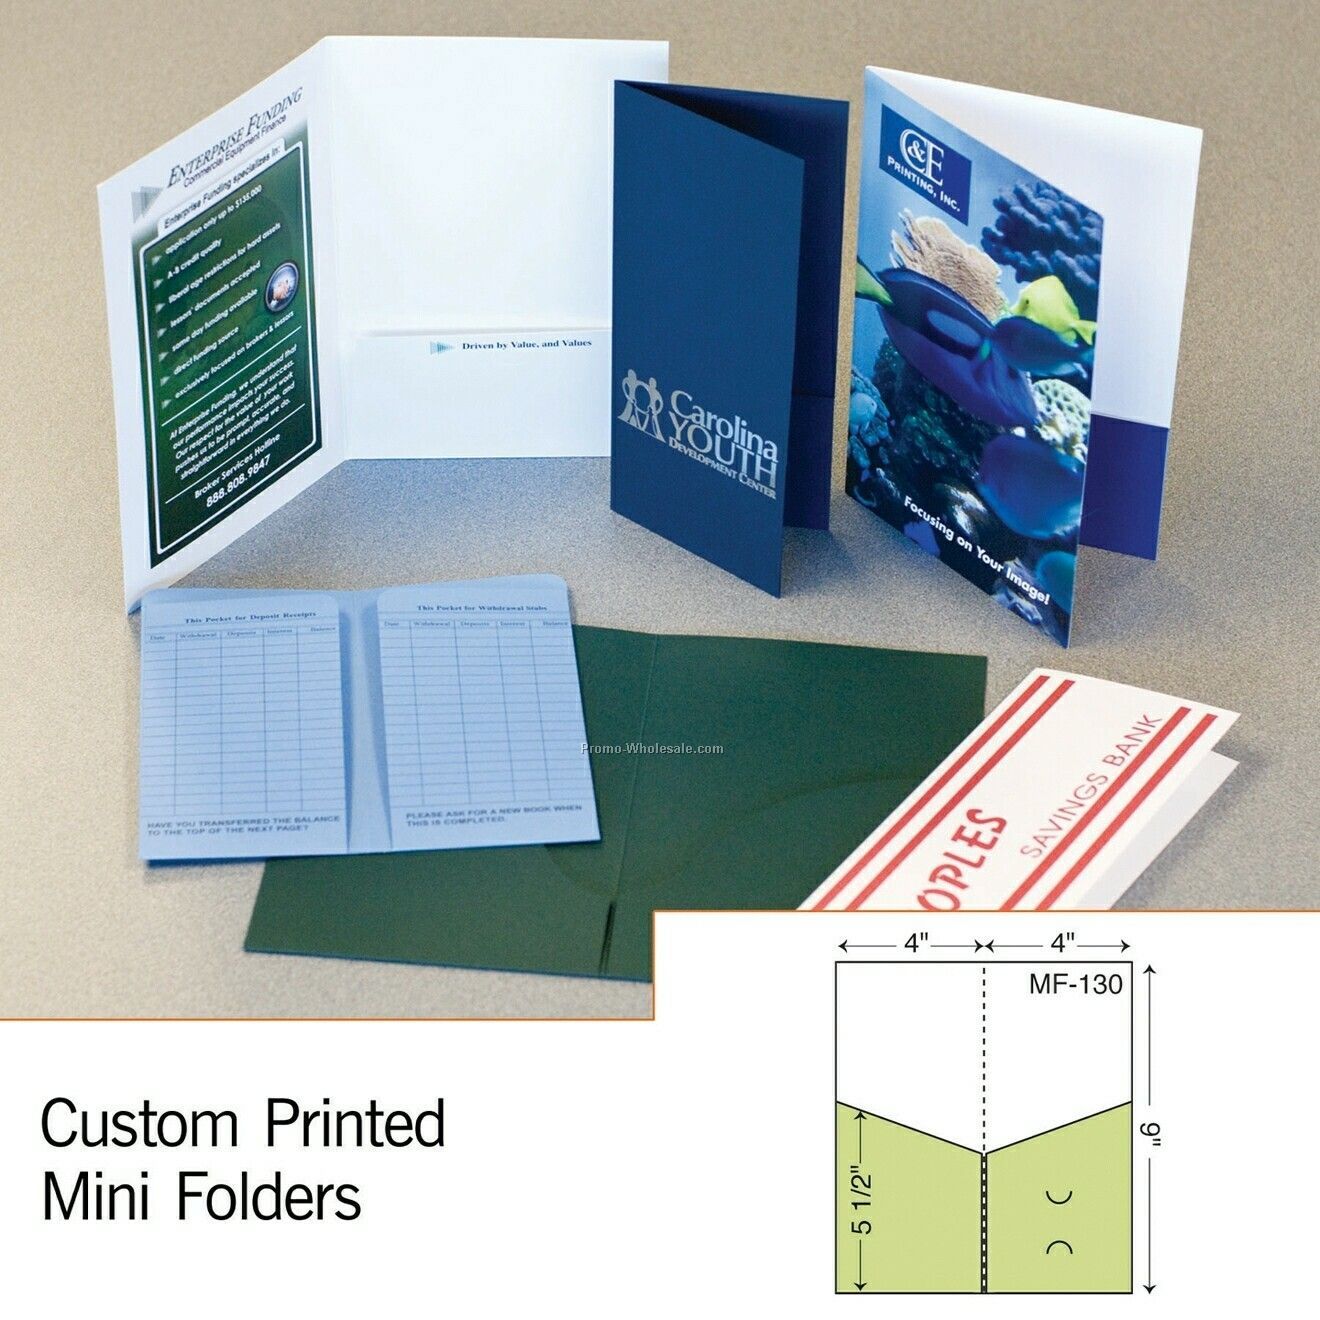 4"x9" Mini Folder W/ Left Pocket (Foil Stamp/Emboss)